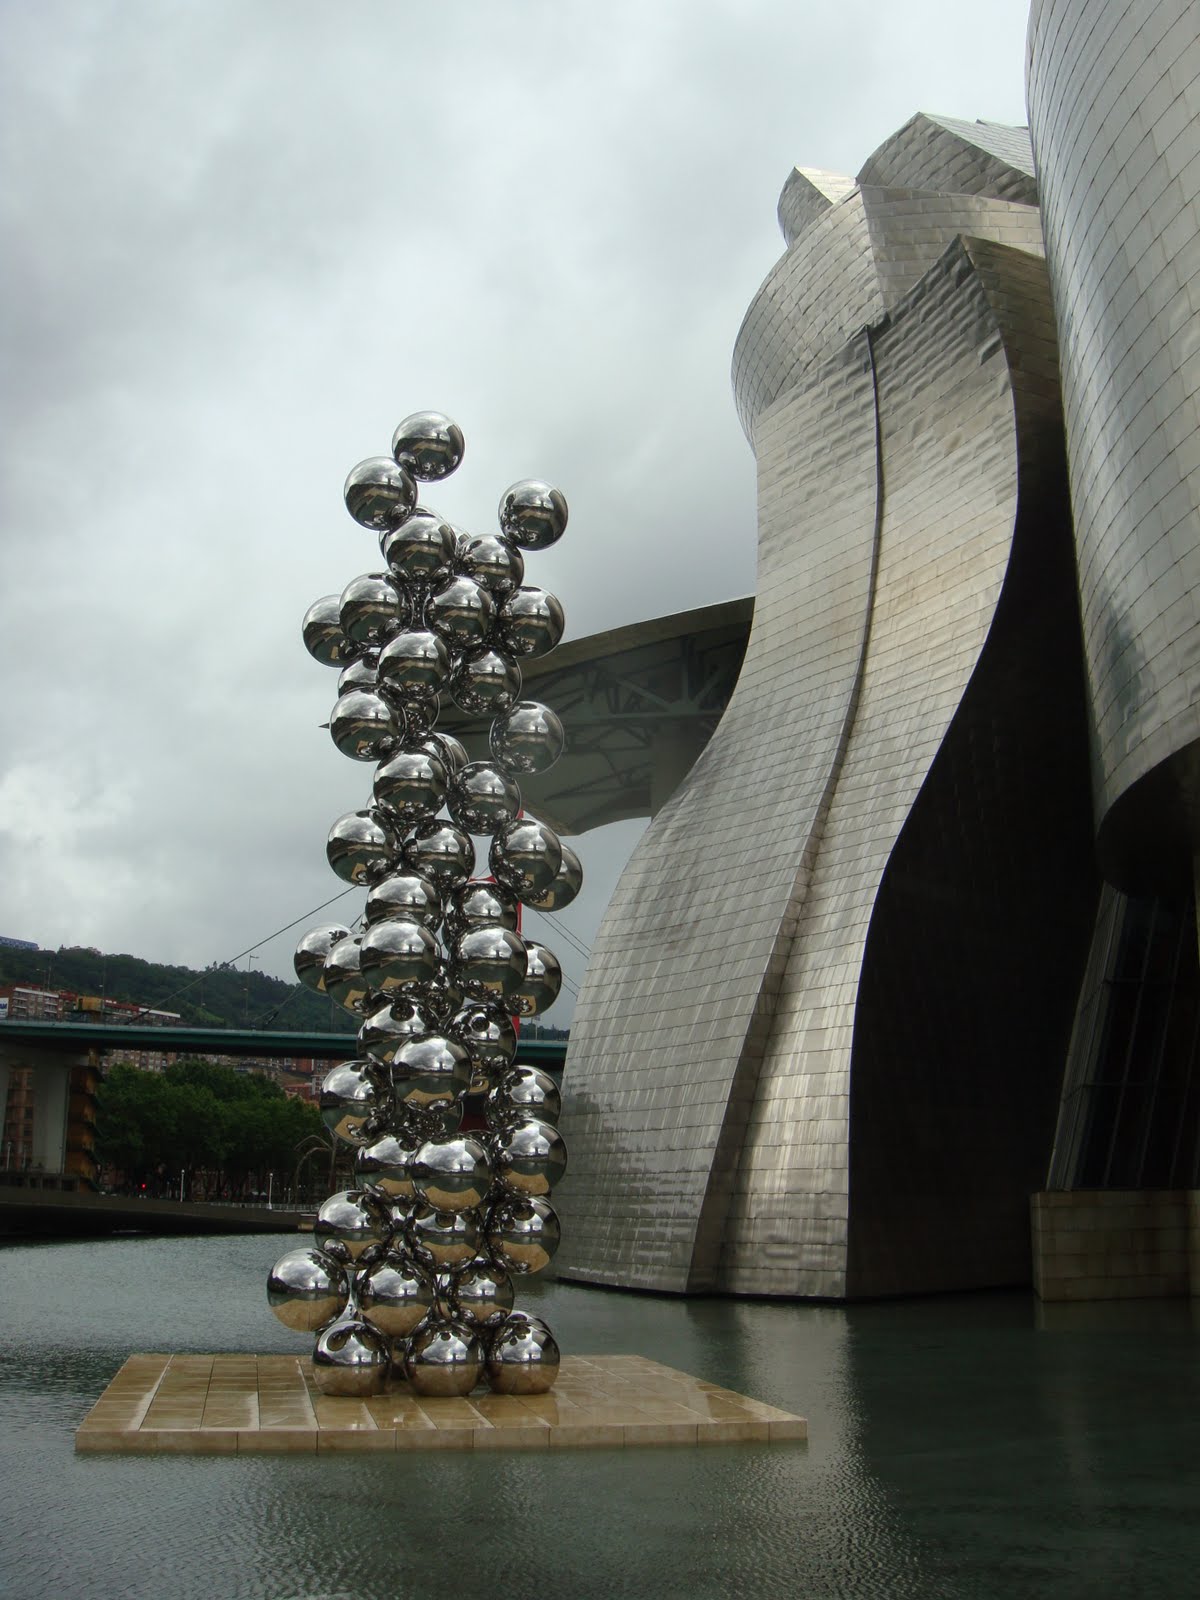 http://1.bp.blogspot.com/_Z7gIMze-sno/TBjs8sOI5AI/AAAAAAAAAL0/-mtT7c74AdQ/s1600/Guggenheim,+Bilbao,+Spain+024.JPG